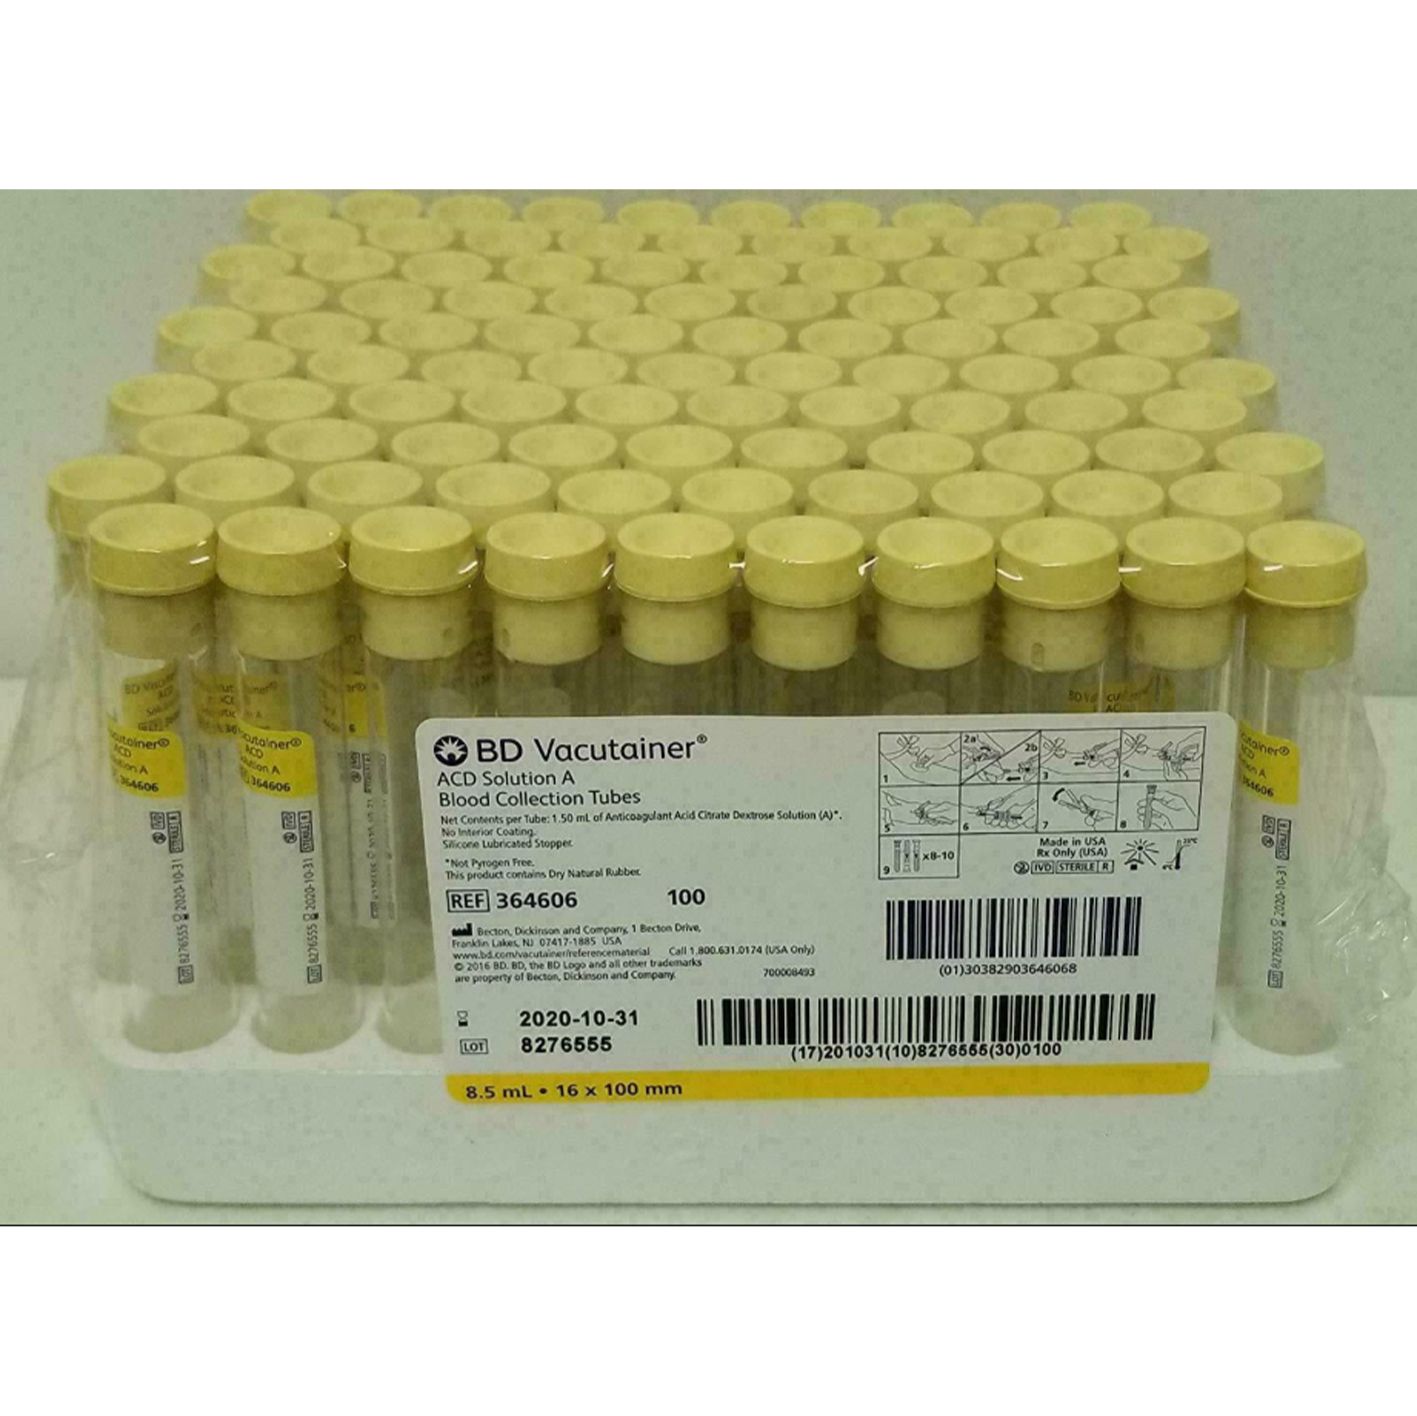 BD 364606 8.5mL ACD全血玻璃管，A型ACD溶液:枸橼三钠、枸橼酸、右旋葡萄糖，黄色一般盖